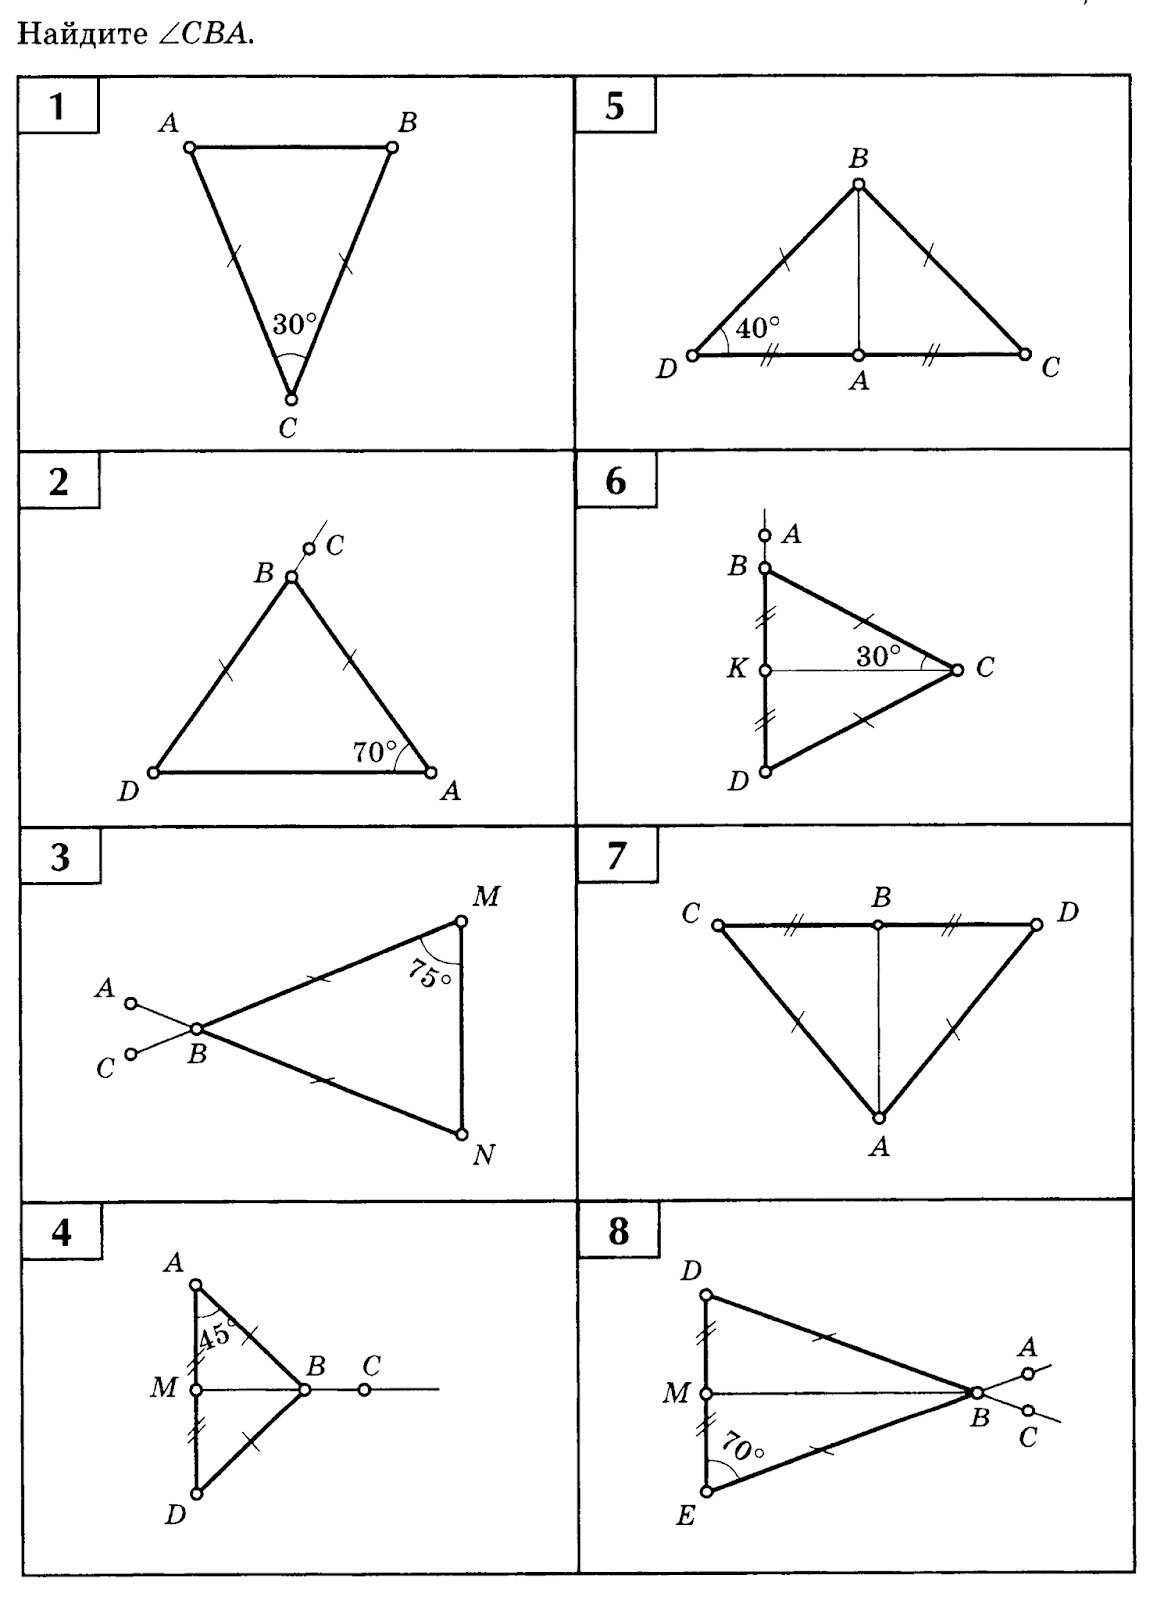 Задачи на чертежах 7 9. Решение задач по готовым чертежам равнобедренный треугольник 7 класс. Равнобедренный треугольник задачи на готовых чертежах 7 класс. Равнобедренный треугольник задачи на готовых чертежах 7 класс Балаян. Задачи на готовых чертежах 7-9 классы равнобедренный треугольник.